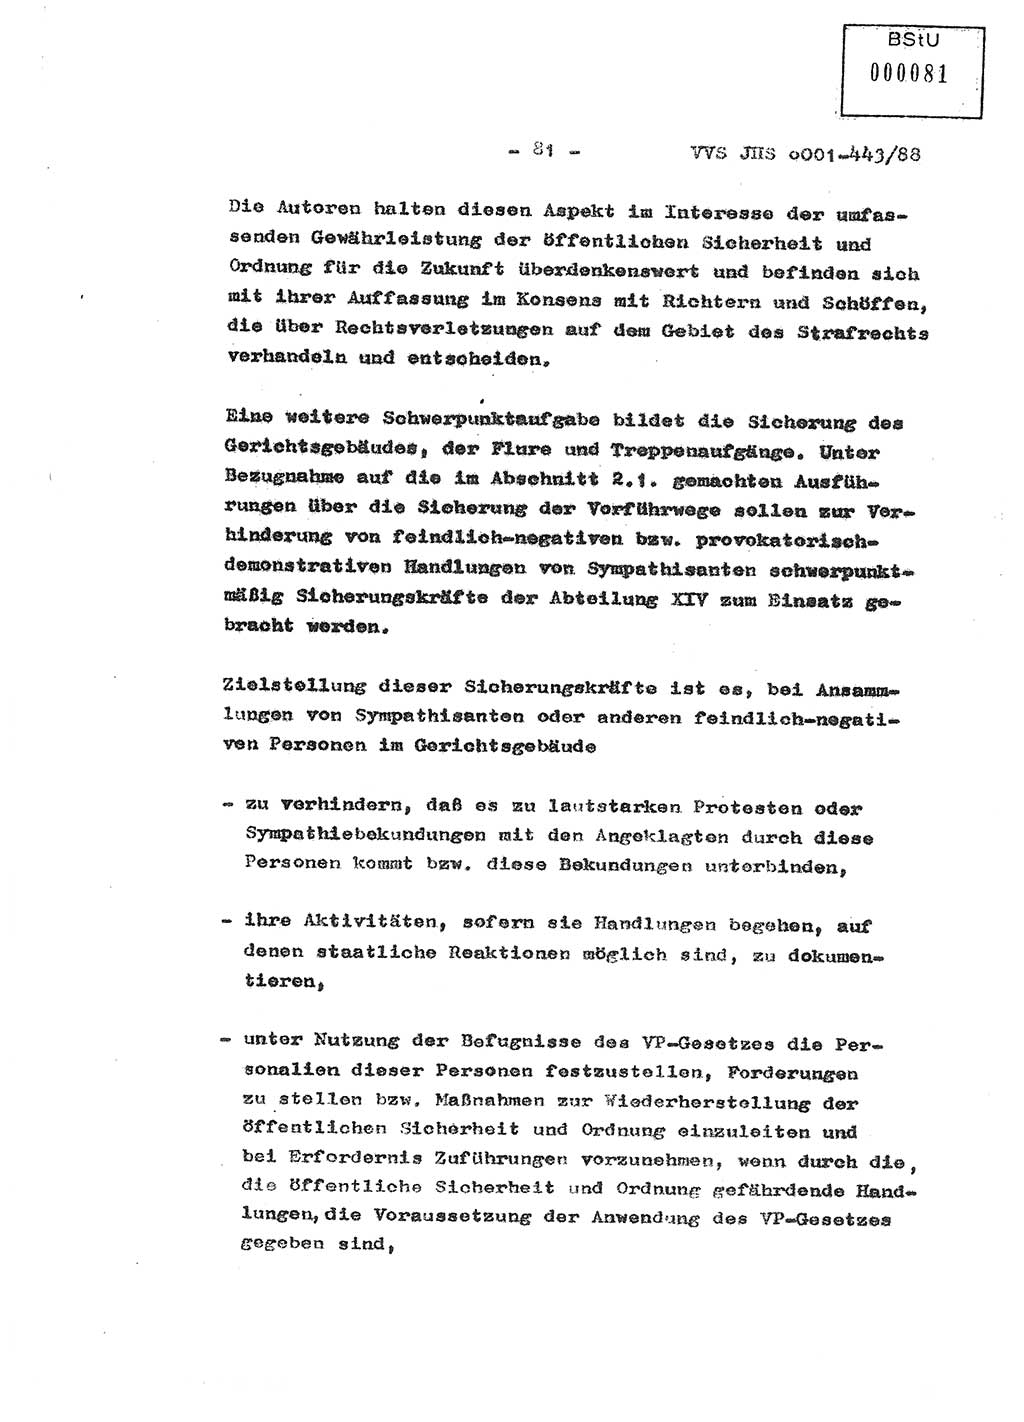 Diplomarbeit Hauptmann Michael Rast (Abt. ⅩⅣ), Major Bernd Rahaus (Abt. ⅩⅣ), Ministerium für Staatssicherheit (MfS) [Deutsche Demokratische Republik (DDR)], Juristische Hochschule (JHS), Vertrauliche Verschlußsache (VVS) o001-443/88, Potsdam 1988, Seite 82 (Dipl.-Arb. MfS DDR JHS VVS o001-443/88 1988, S. 82)